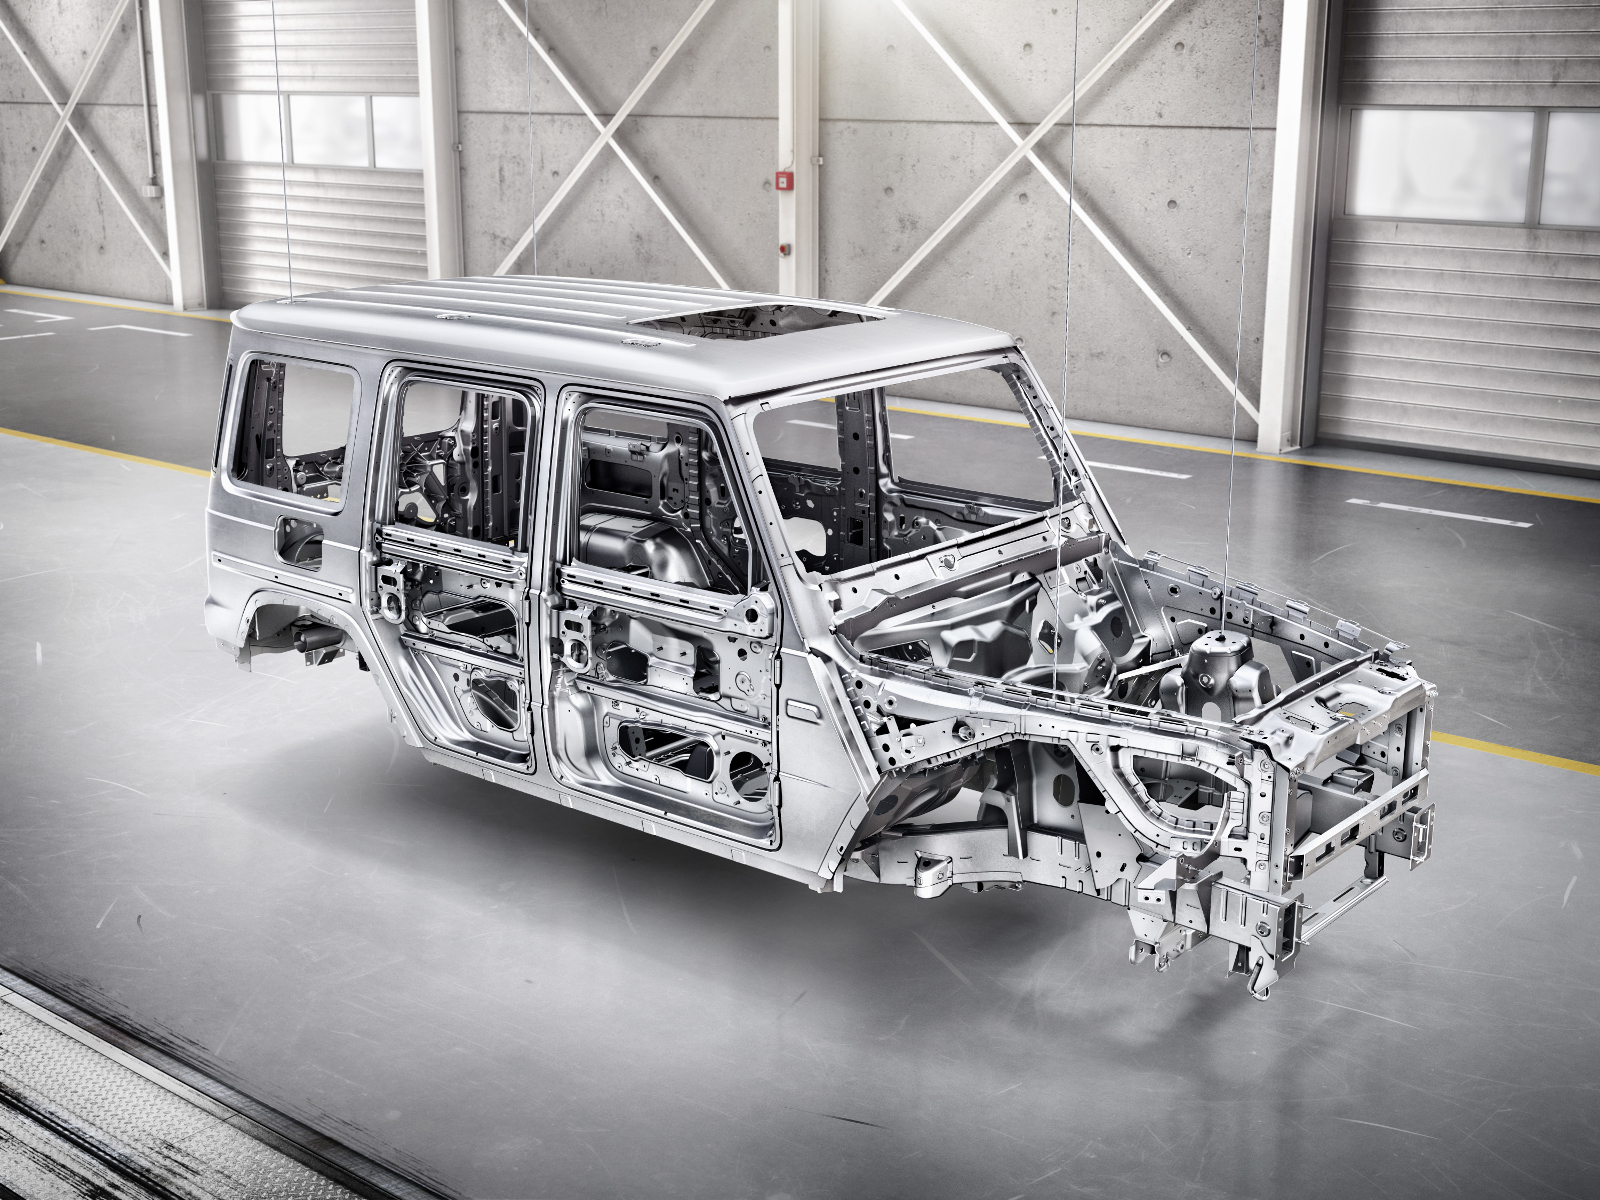 Die neue Mercedes-Benz G-Klasse von 2018 - 170 kg leichter, dennoch stabiler. Dank neuer Produktionsverfahren und Materialien.